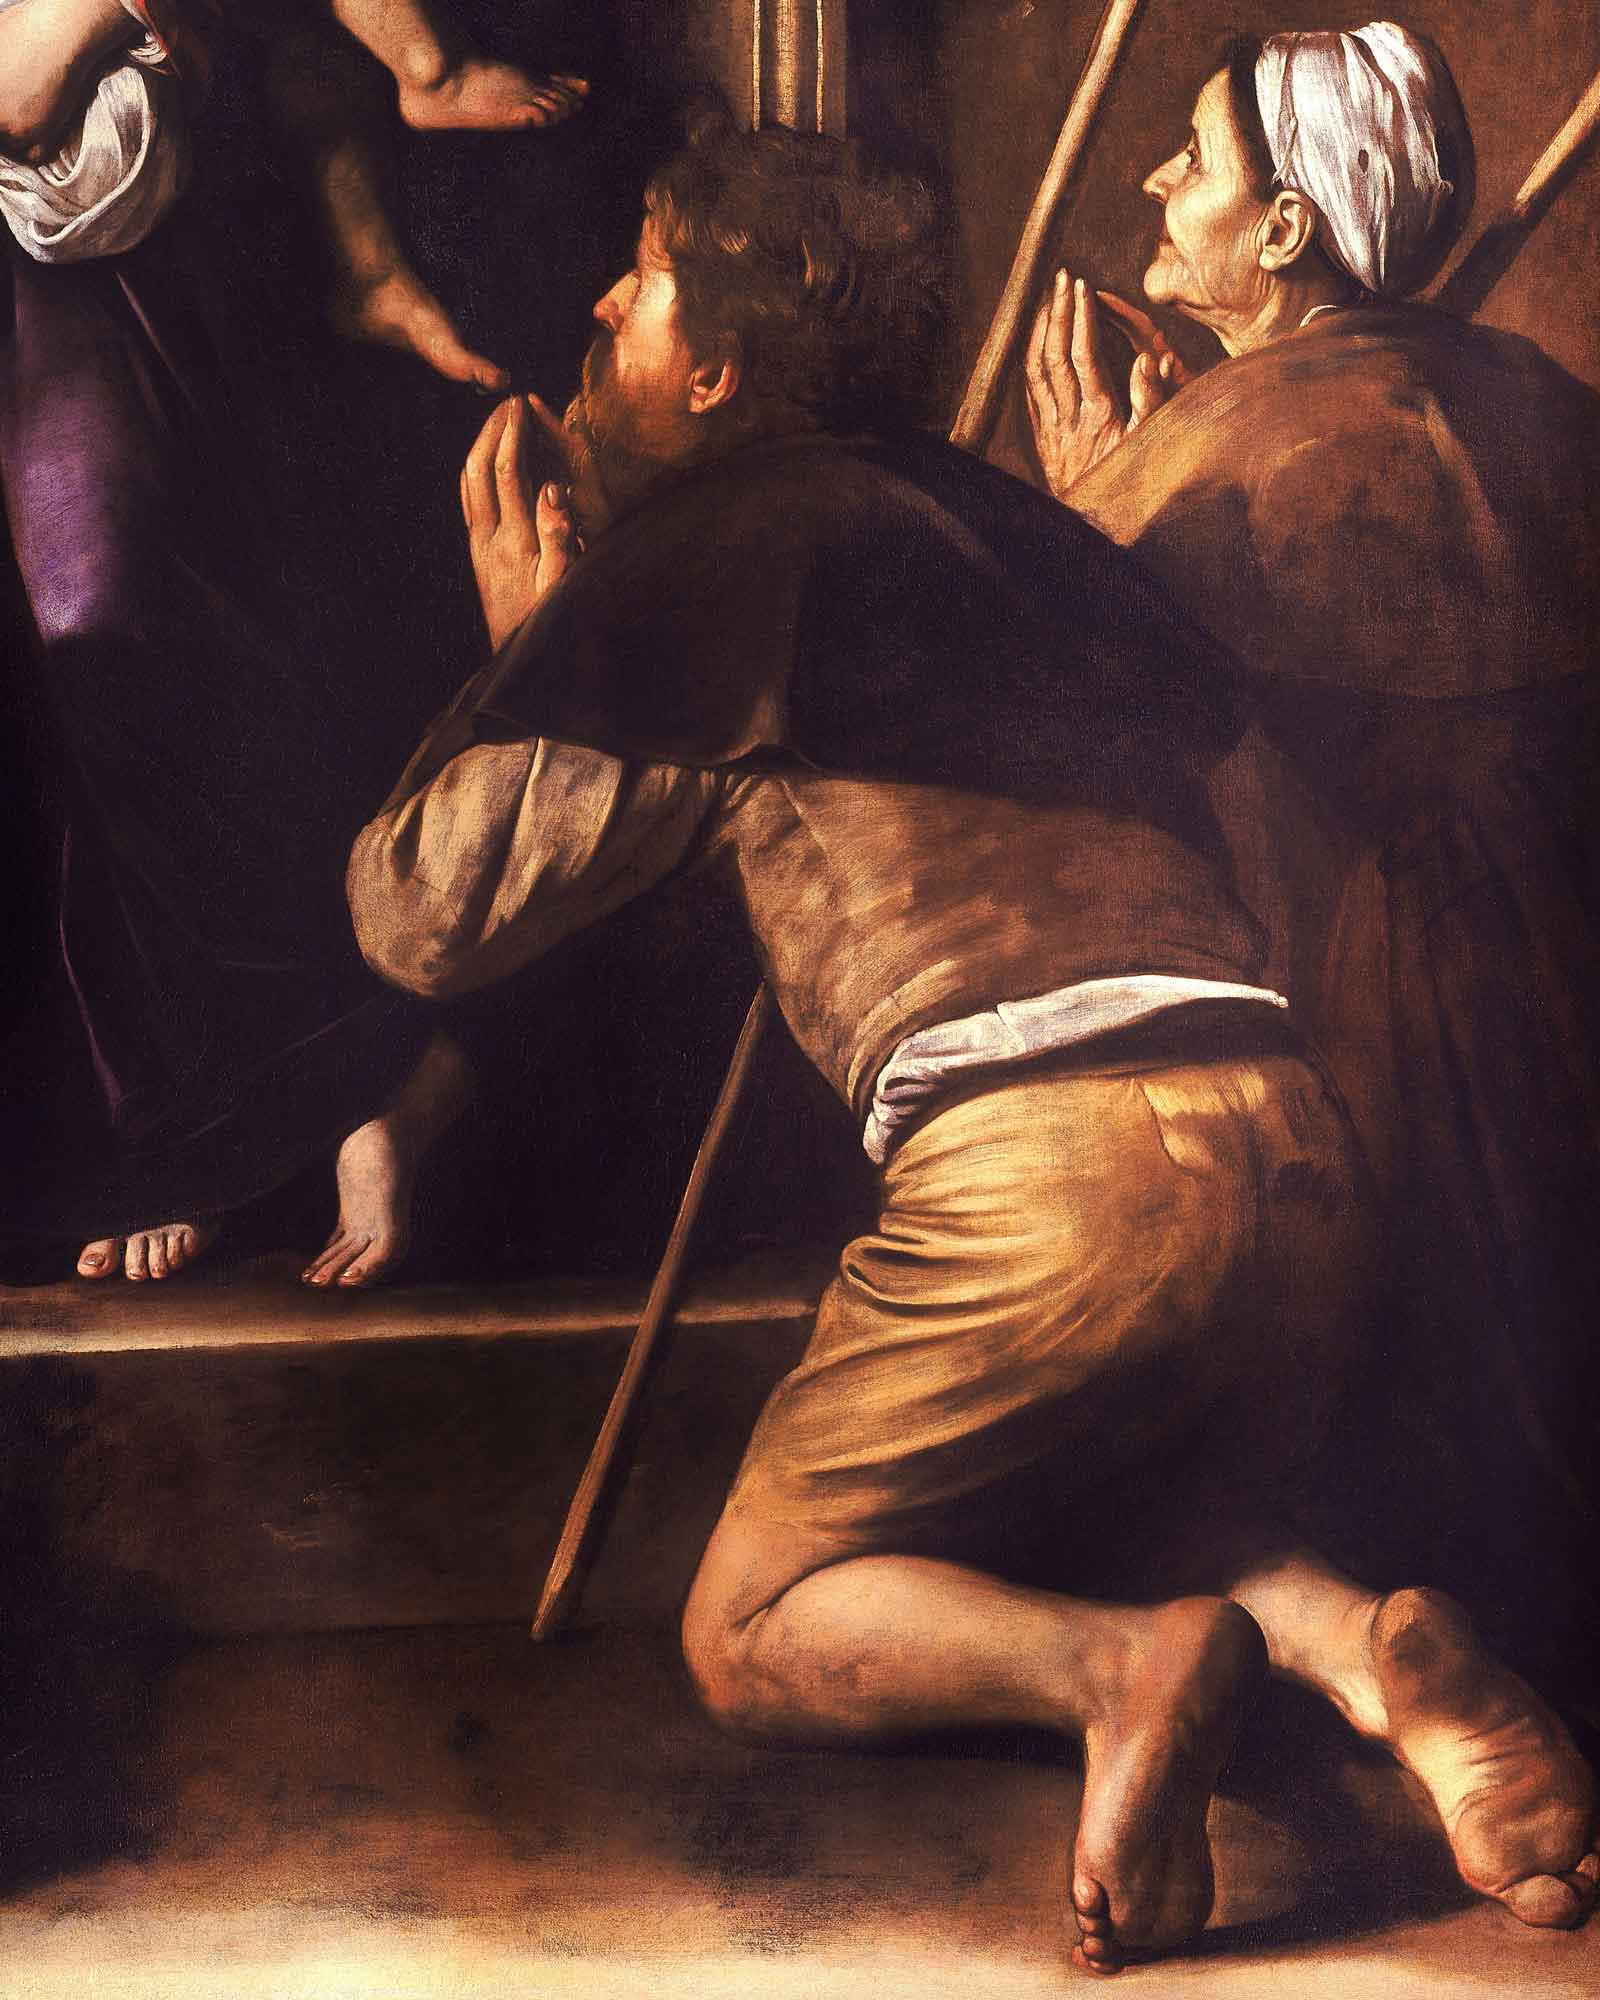 Caravaggio and the Baroque Palette